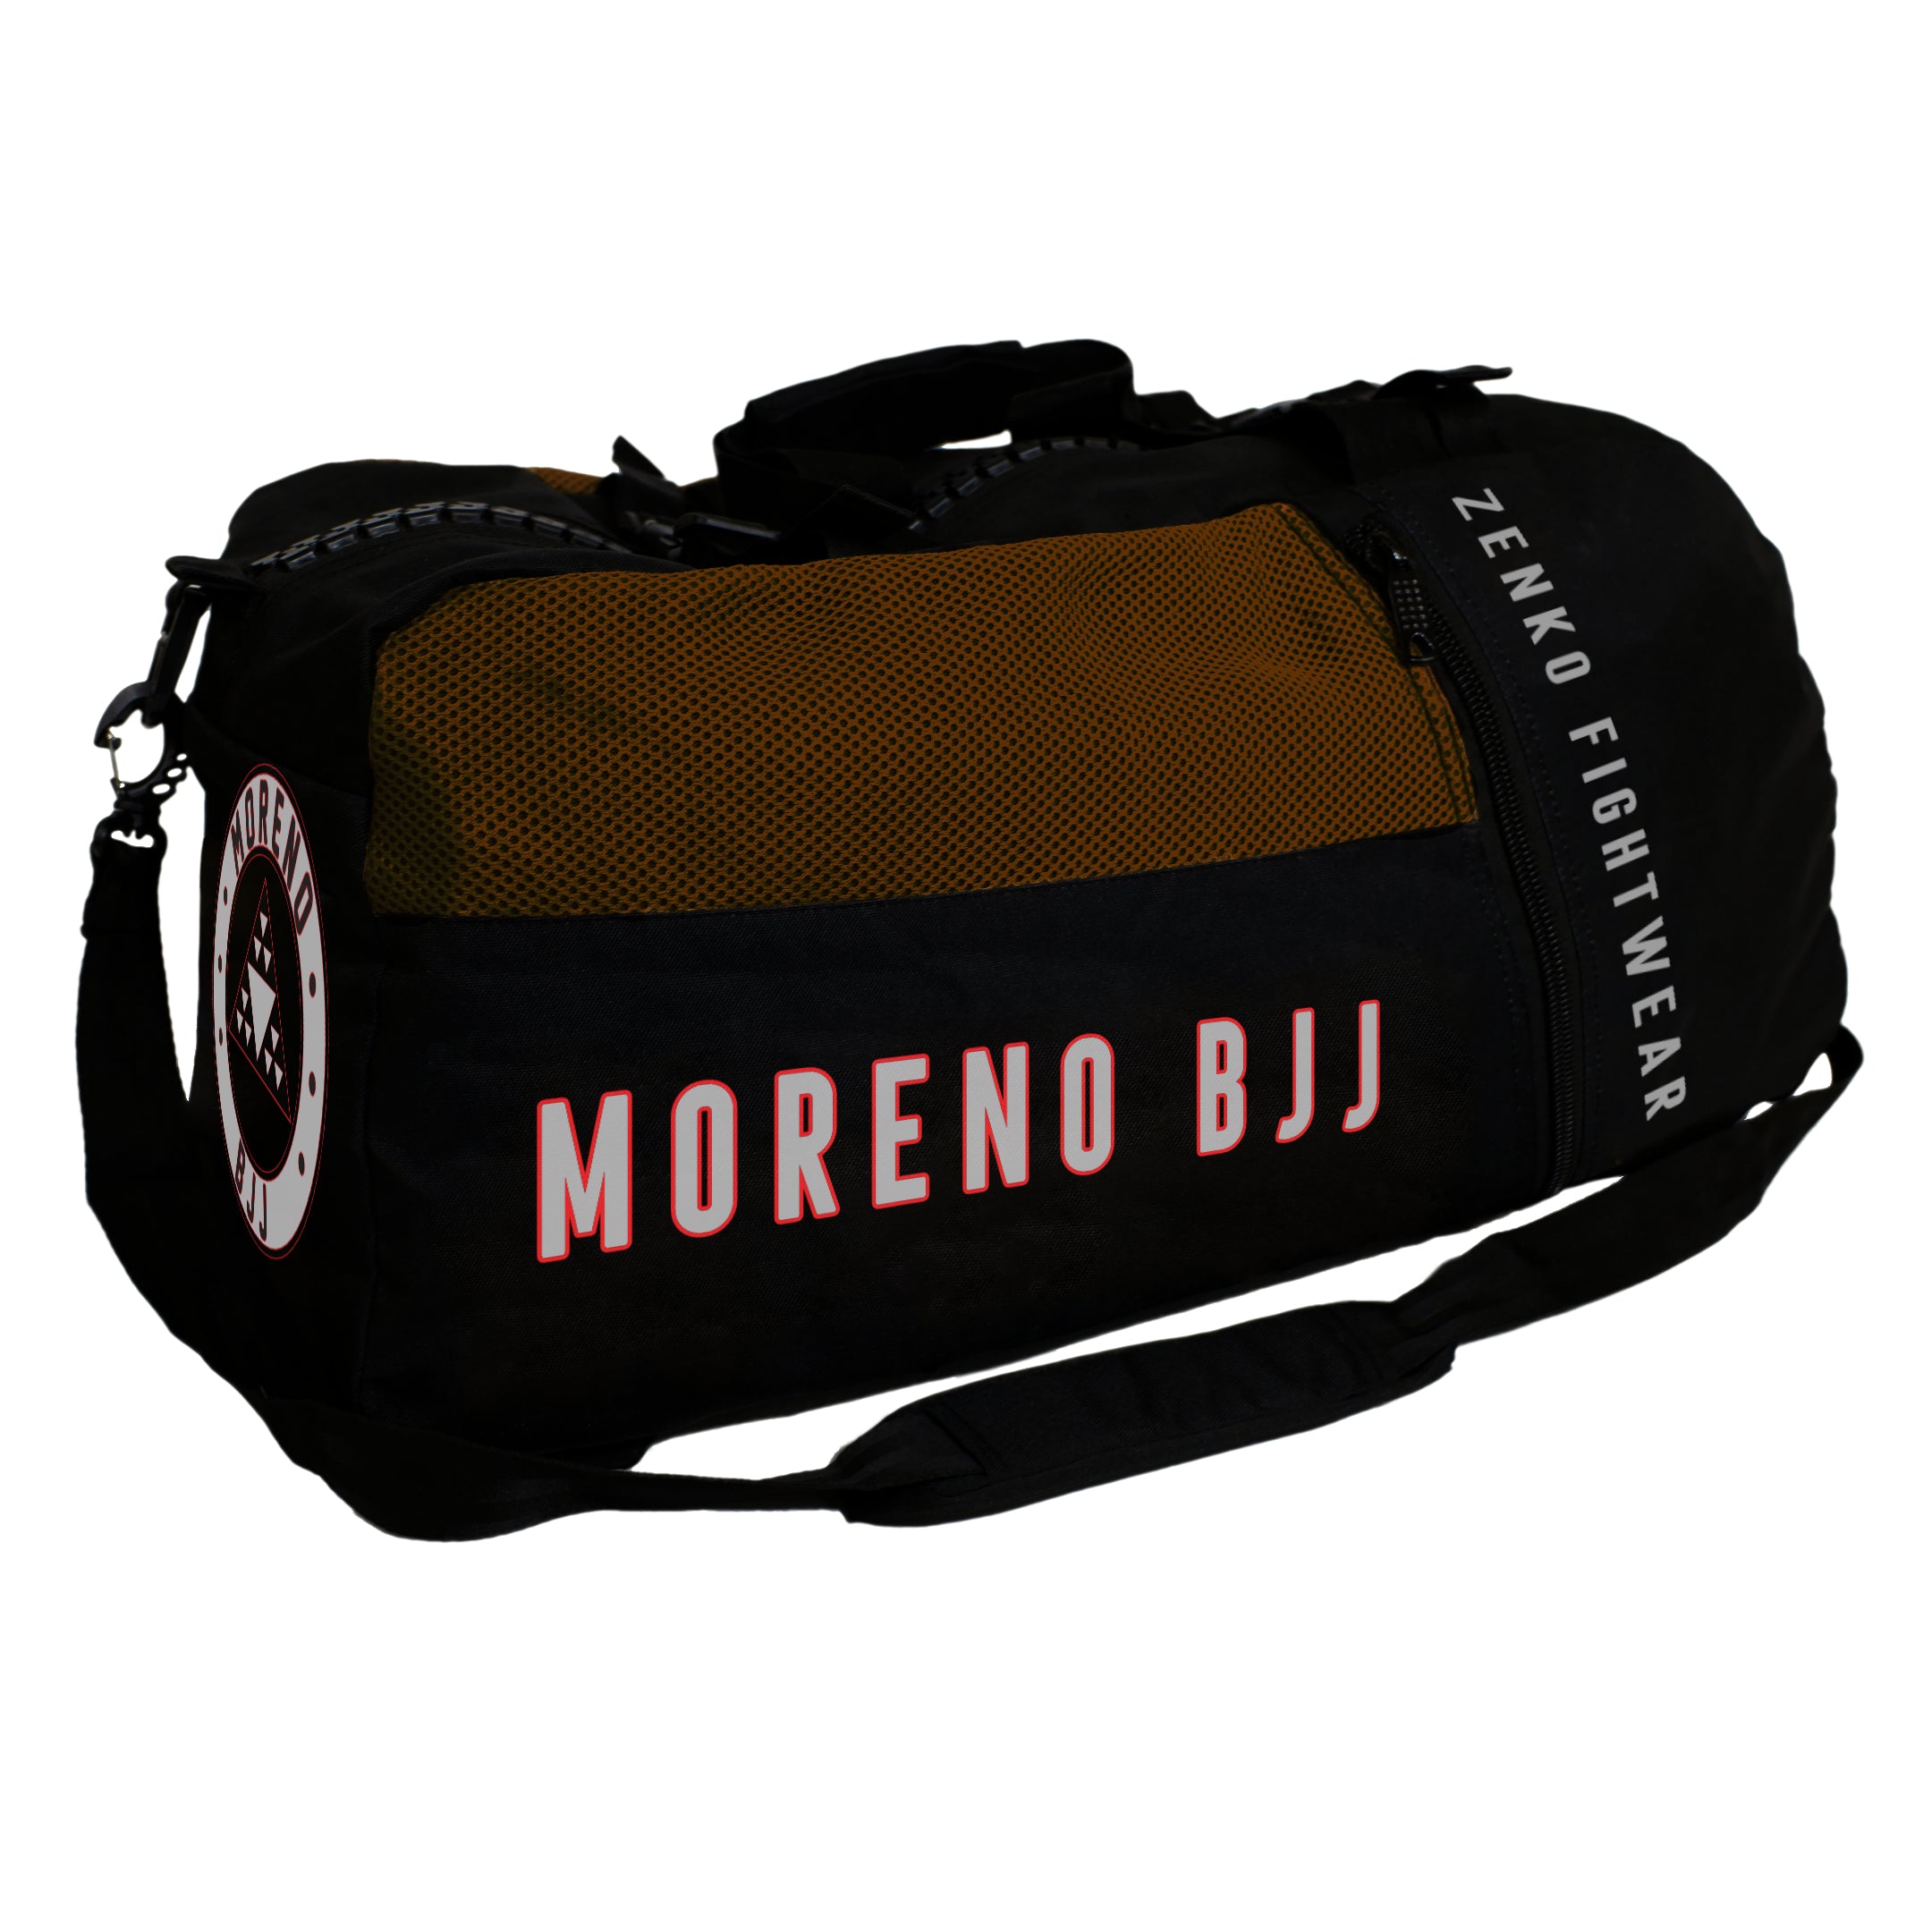 Moreno BJJ Gear Bag (Brown)